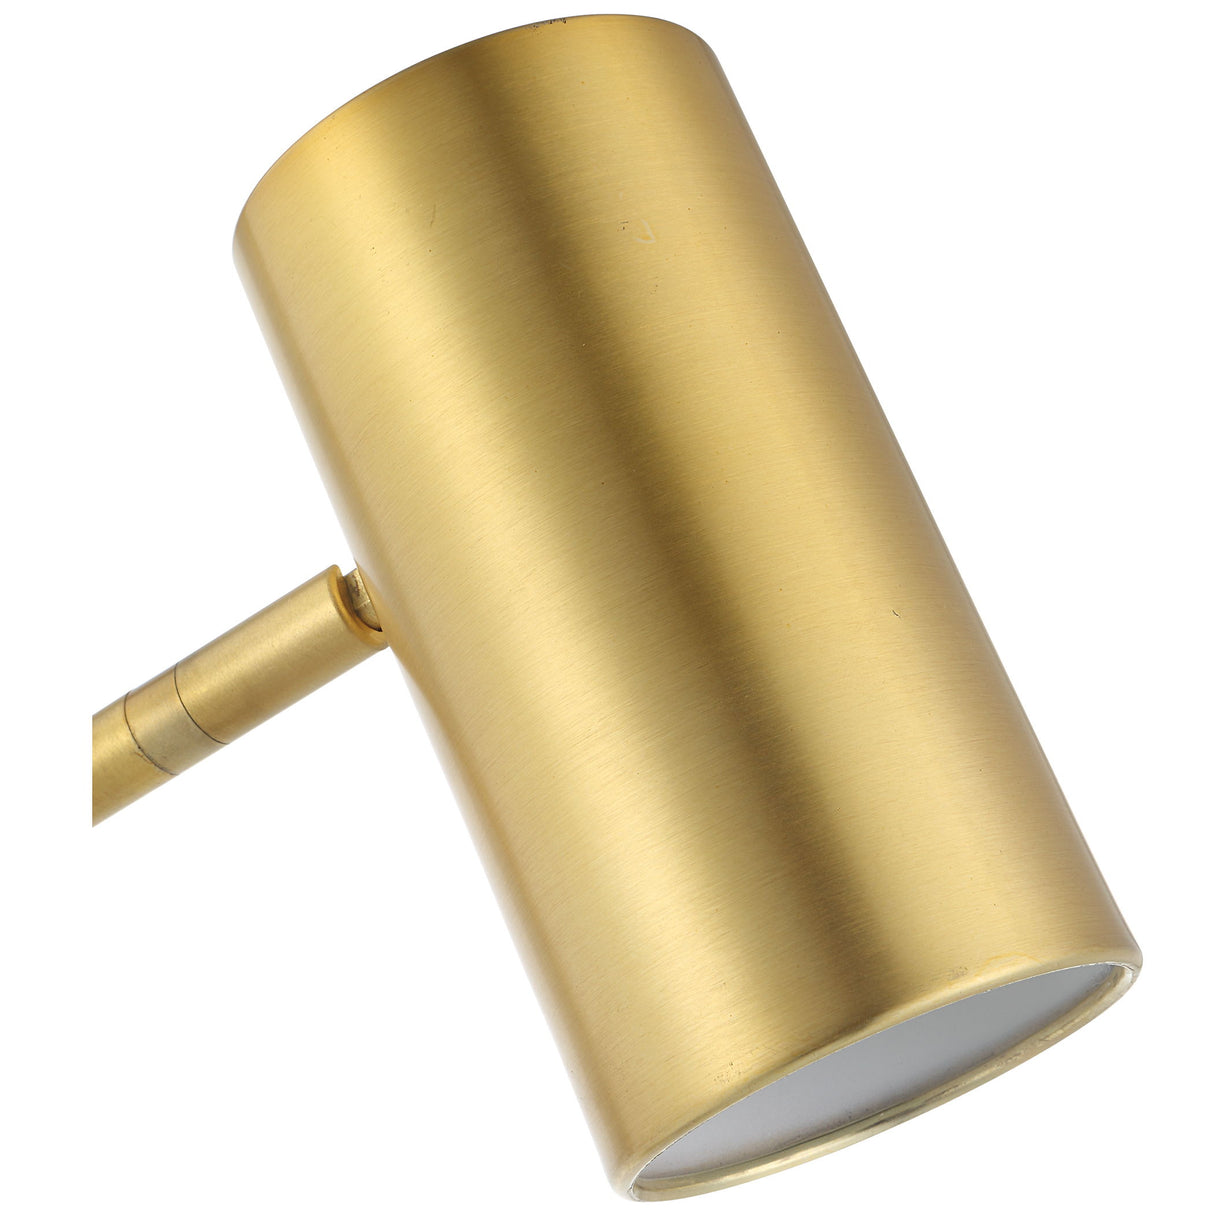 Desk Lamp - Brushed Gold